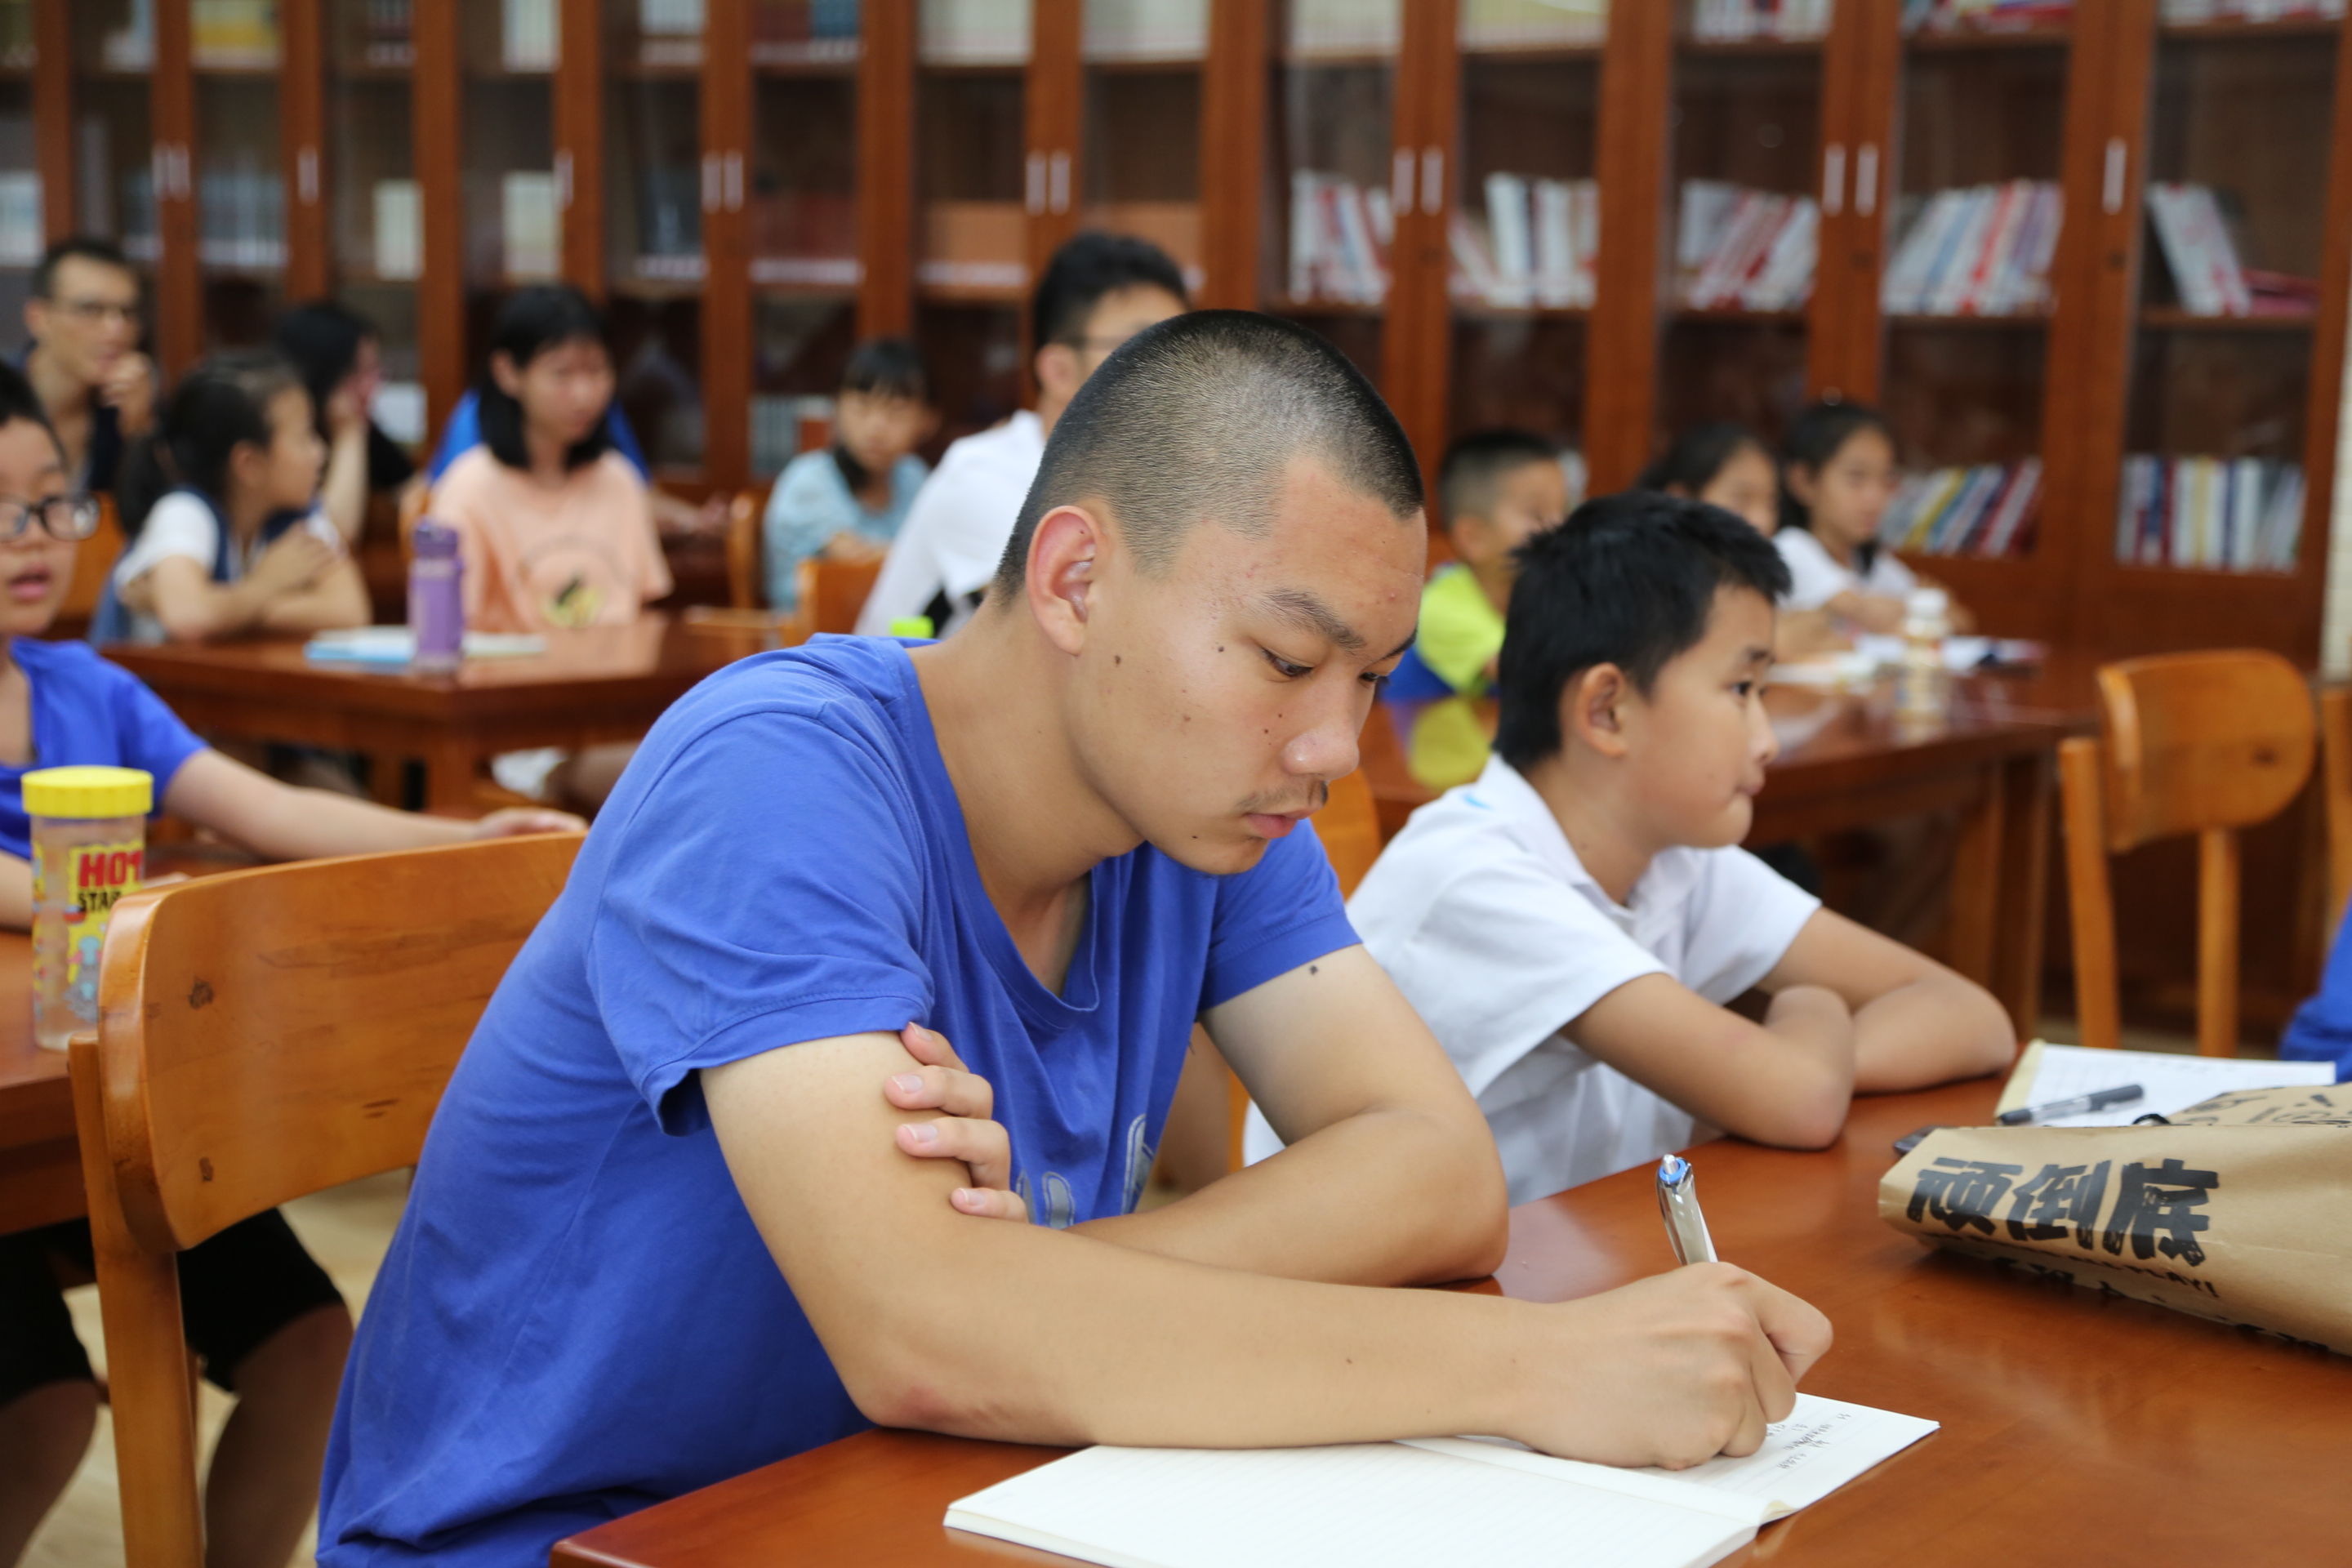 滨州市图书馆举办"暑期文化活动月第九期《天生我材——谈中小学生阅读与写作》